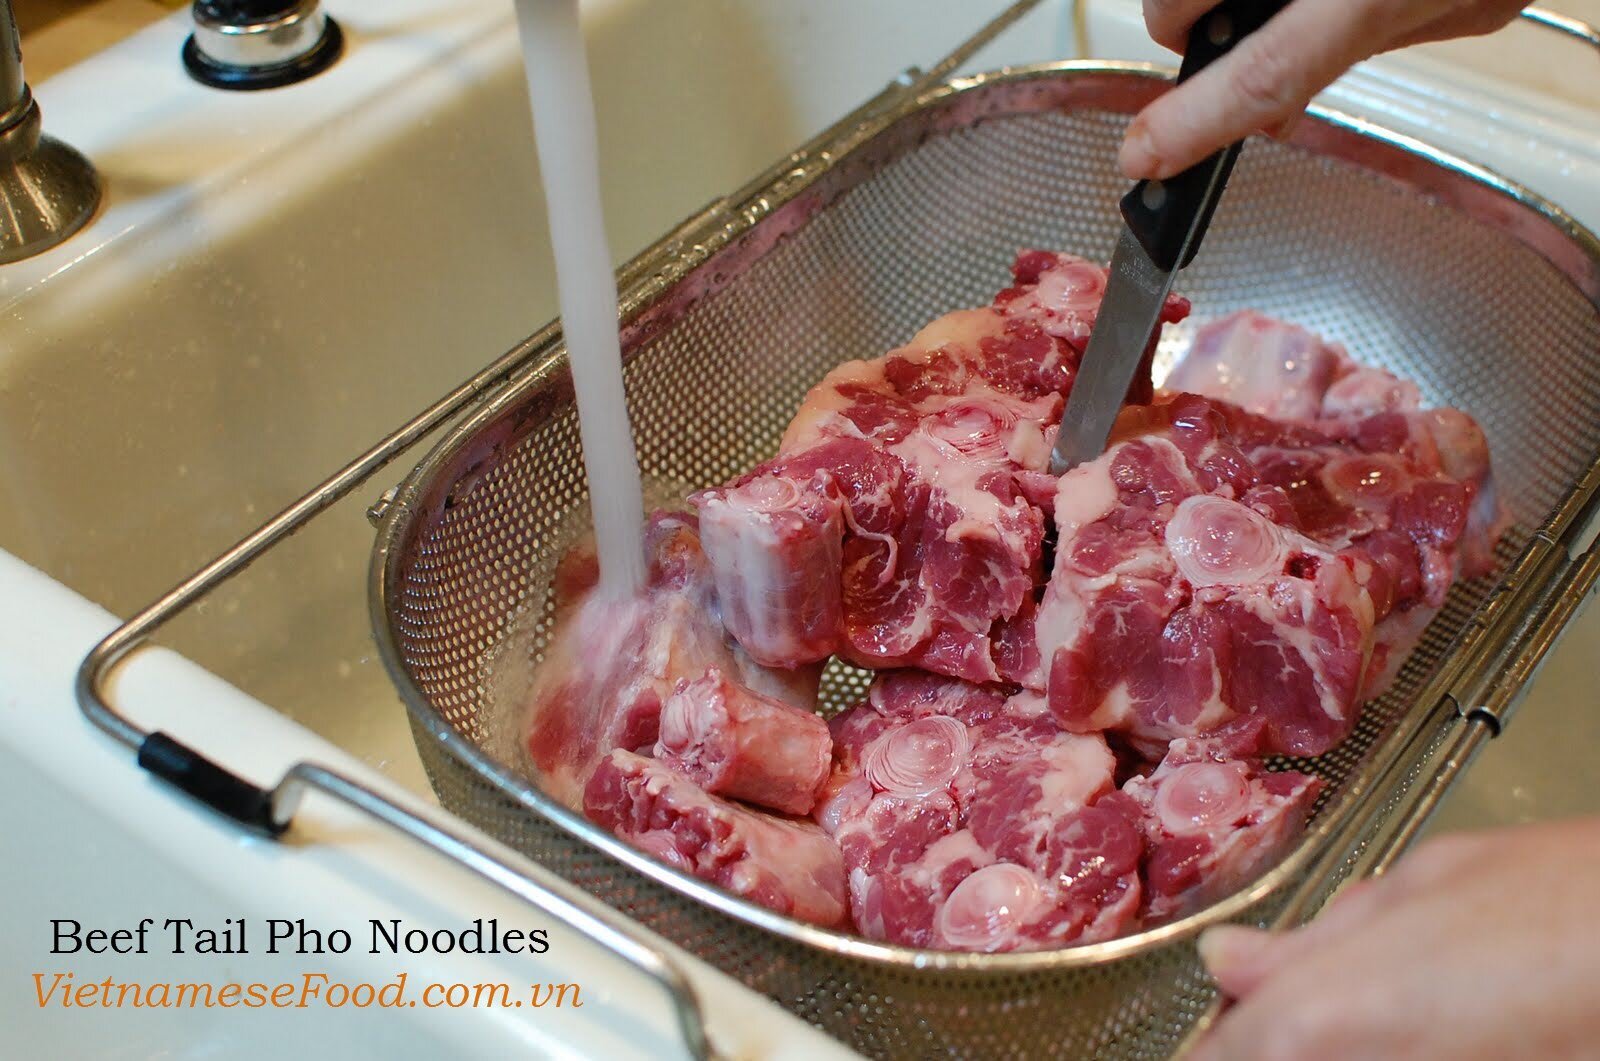 Beef Tail Pho Noodles Recipe (Phở Đuôi Bò)